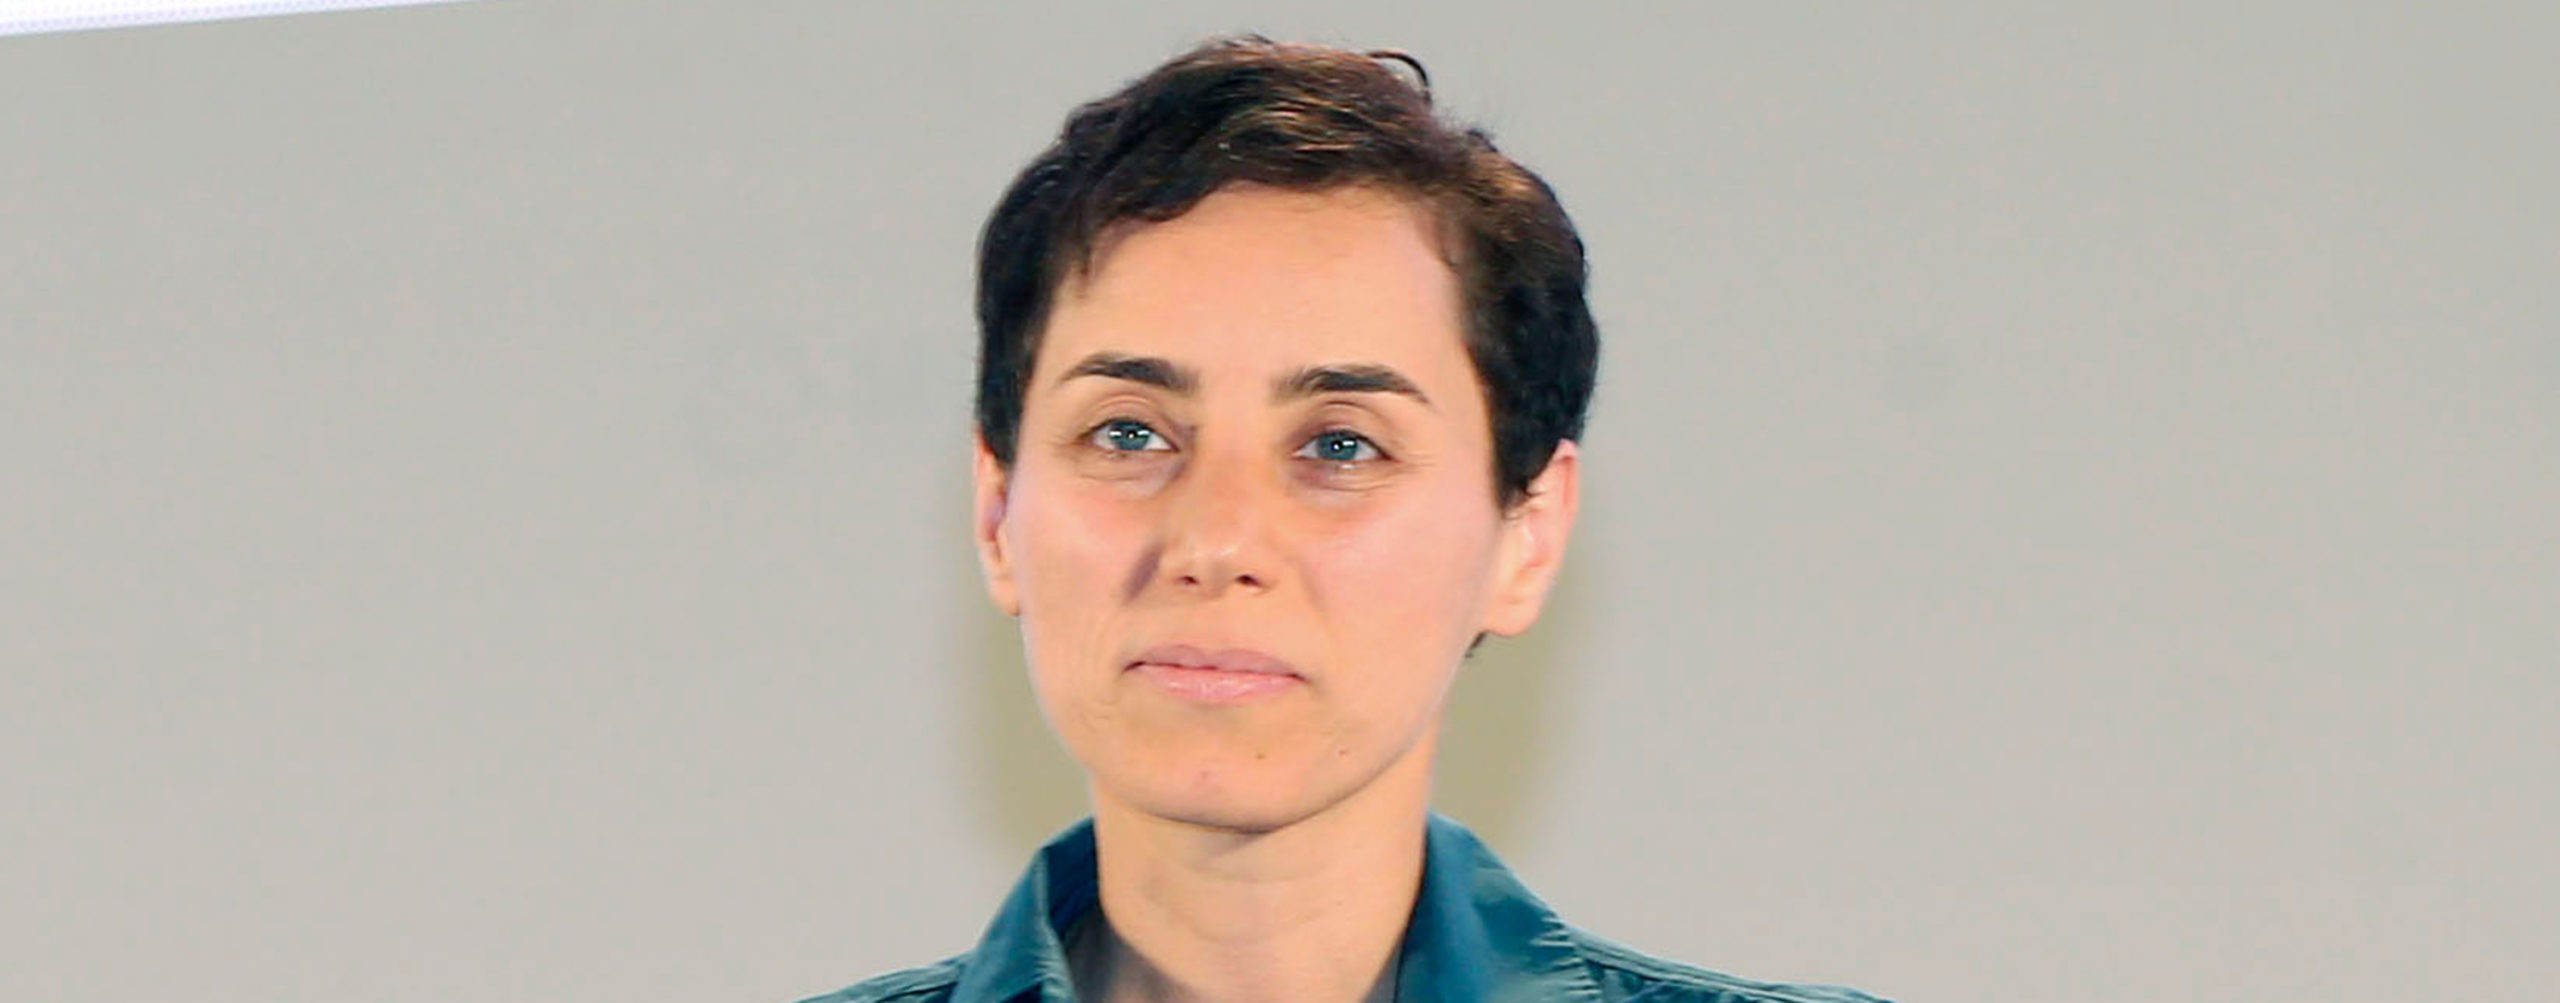 Maryam-Mirzakhani-hero-scaled